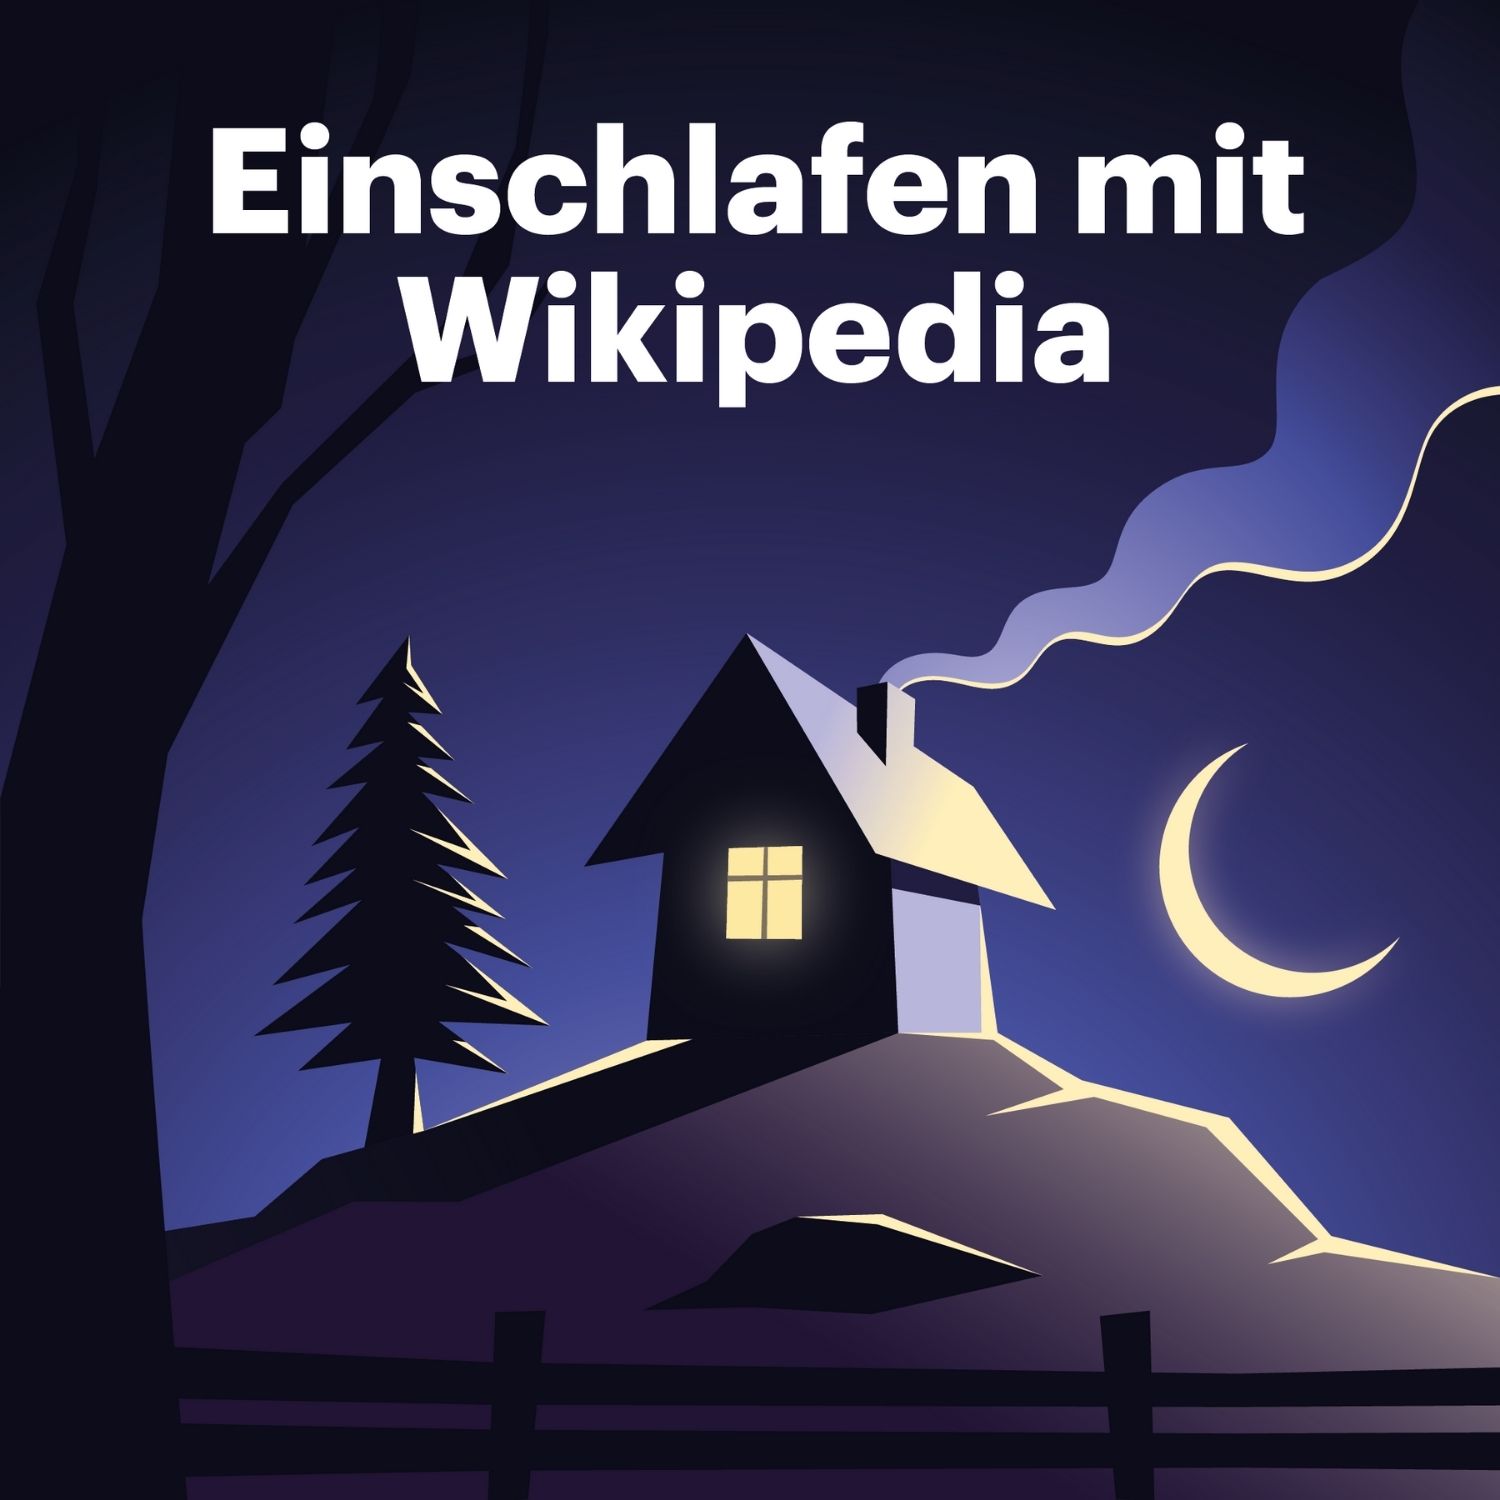 Einschlafen mit Wikipedia podcast show image